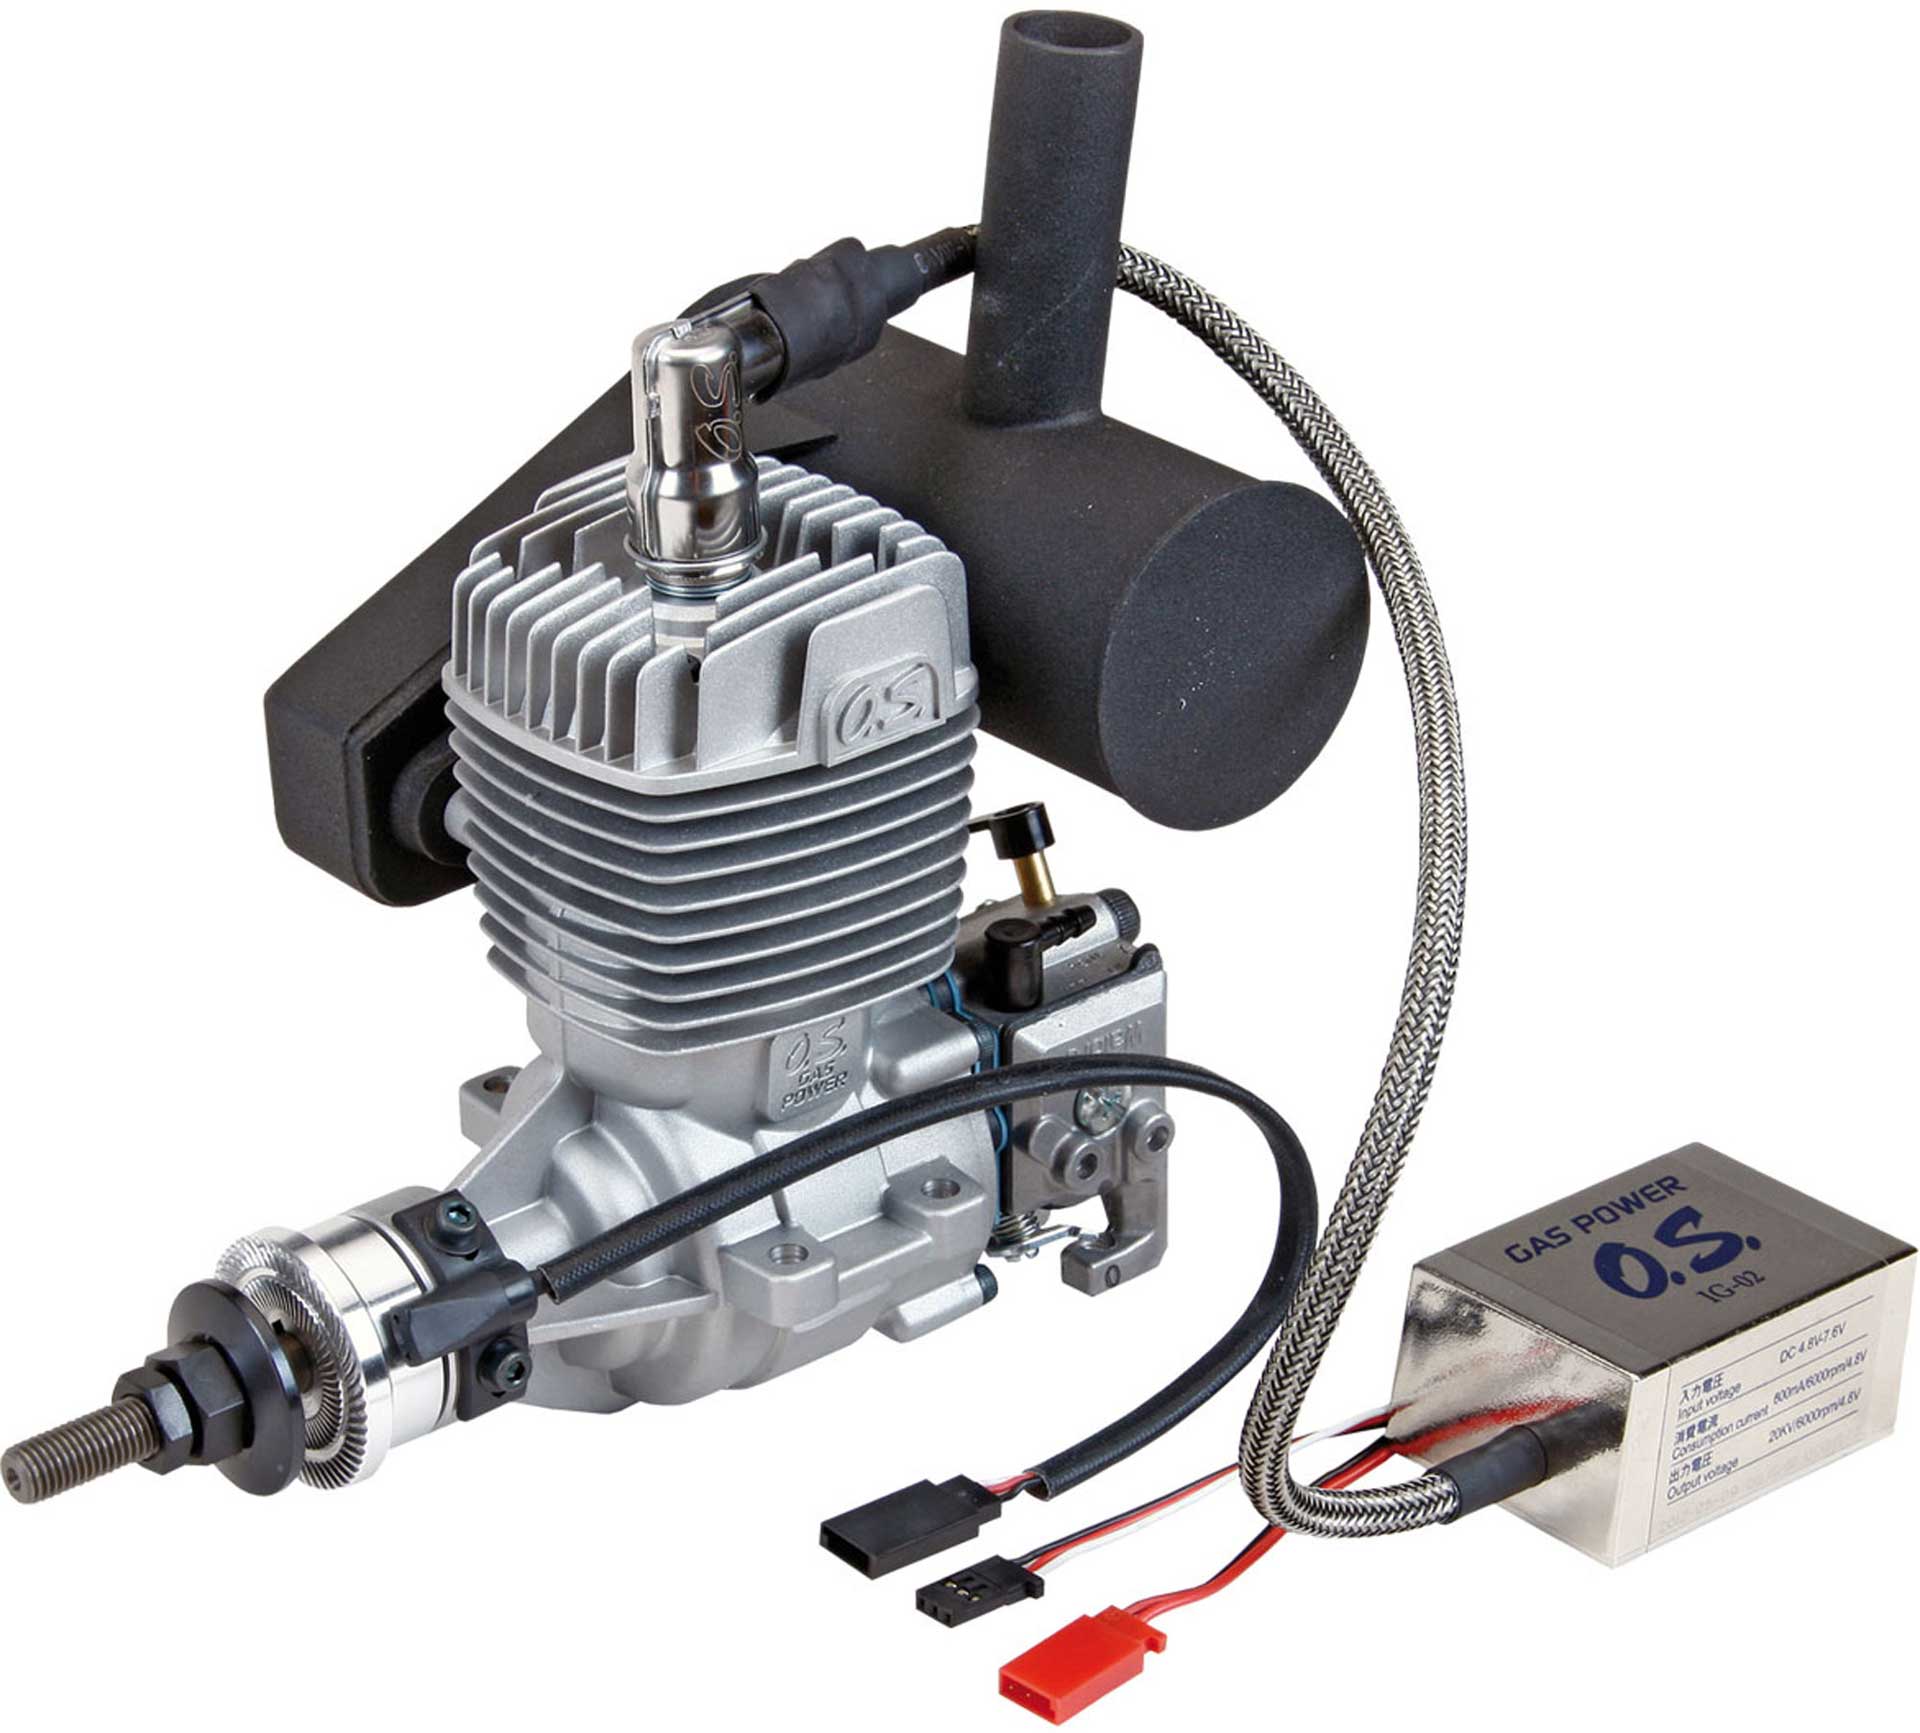 OS GT-22 Benzin Motor mit elektronischer Zündung IG-02 und Schalldämpfer E-5040